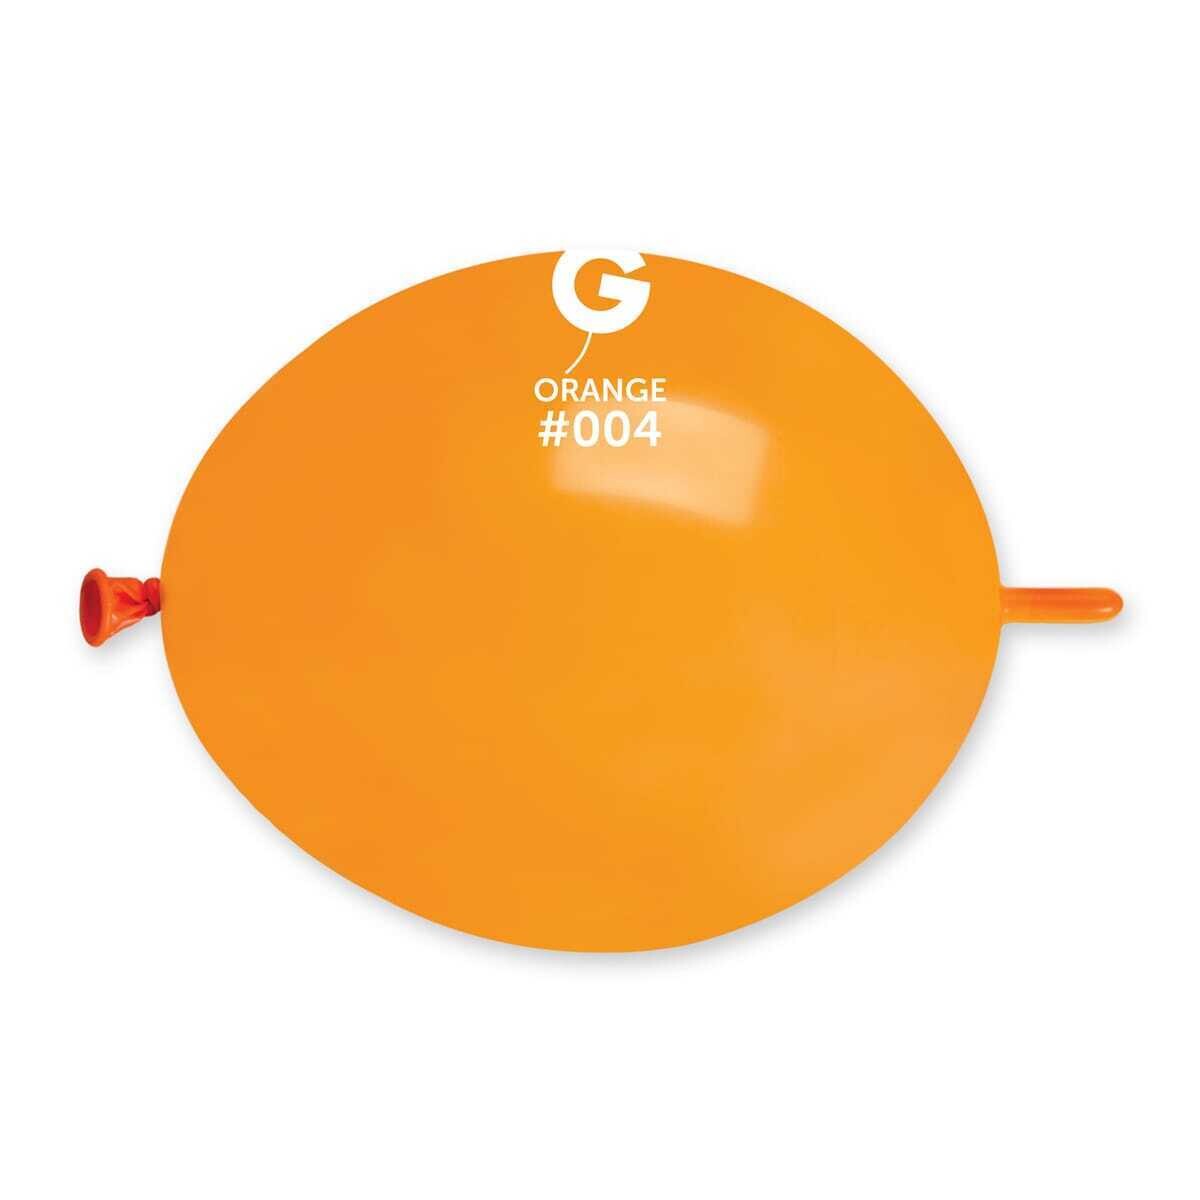 GL6: #004 Orange 060416 - 6 in